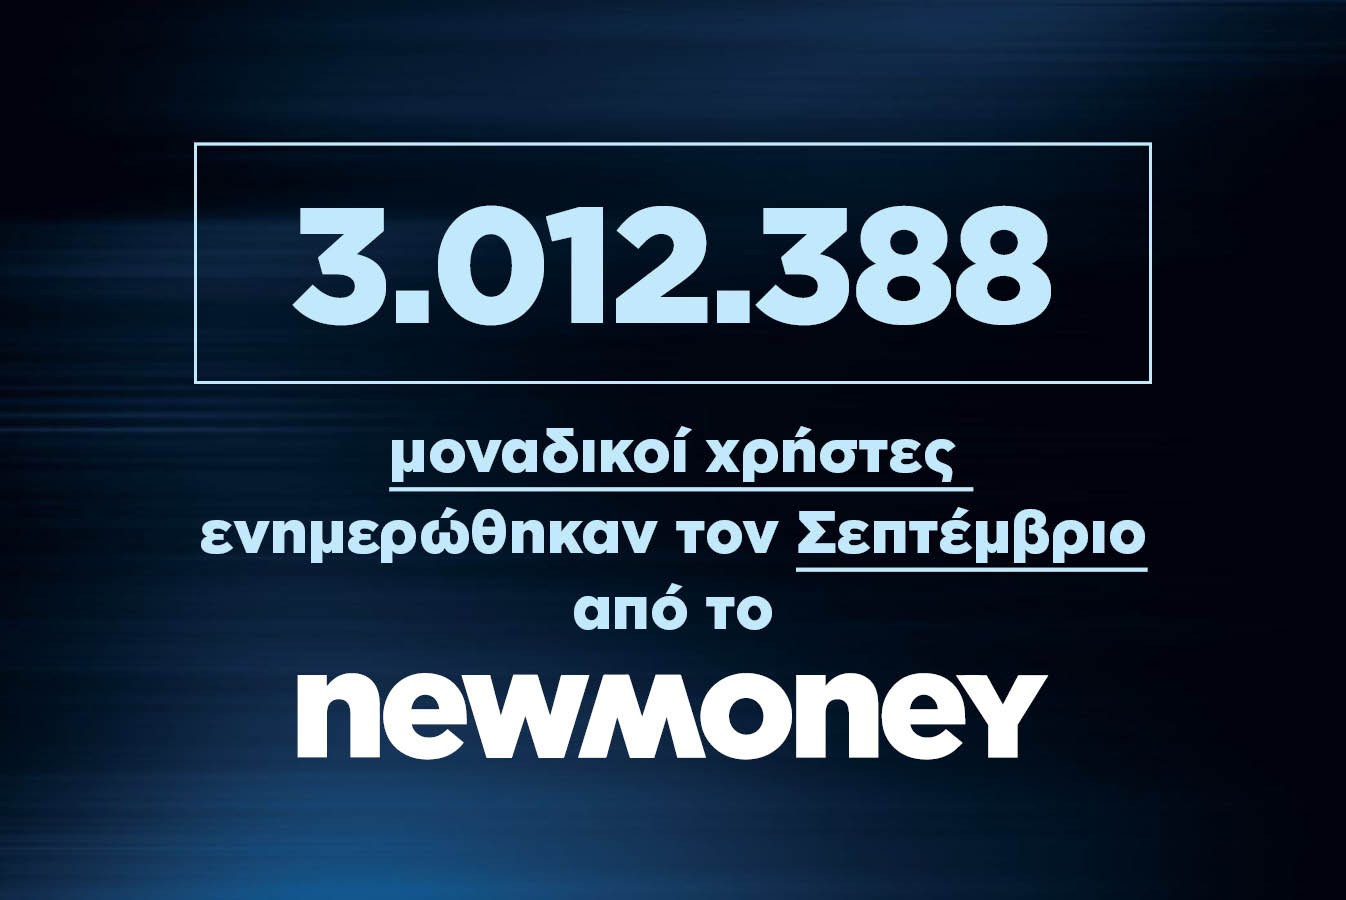 3.012.388 μοναδικοί χρήστες ενημερώθηκαν τον Σεπτέμβριο από το newmoney.gr